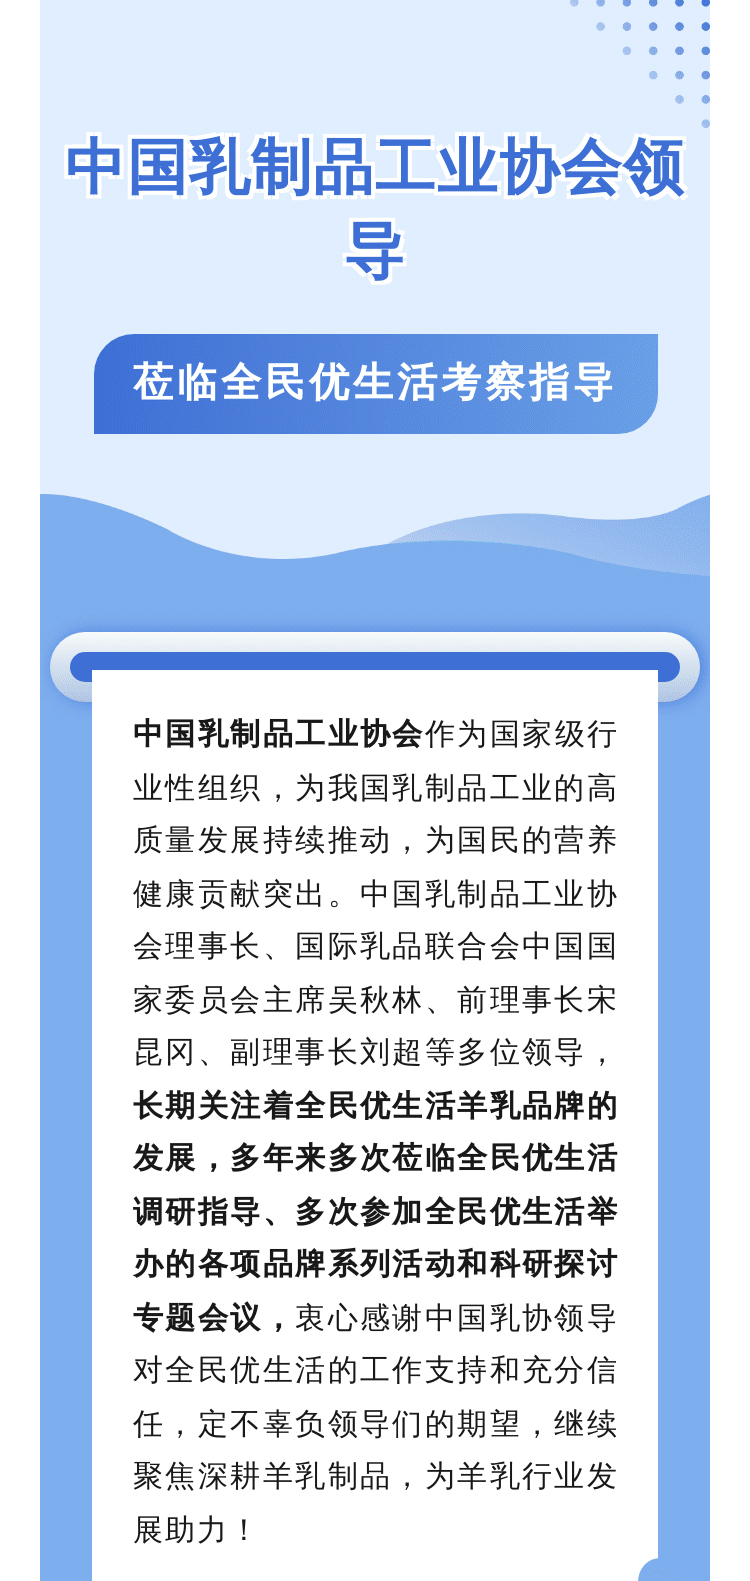 中国乳制品工业协会领导莅临考察指导_02.jpg